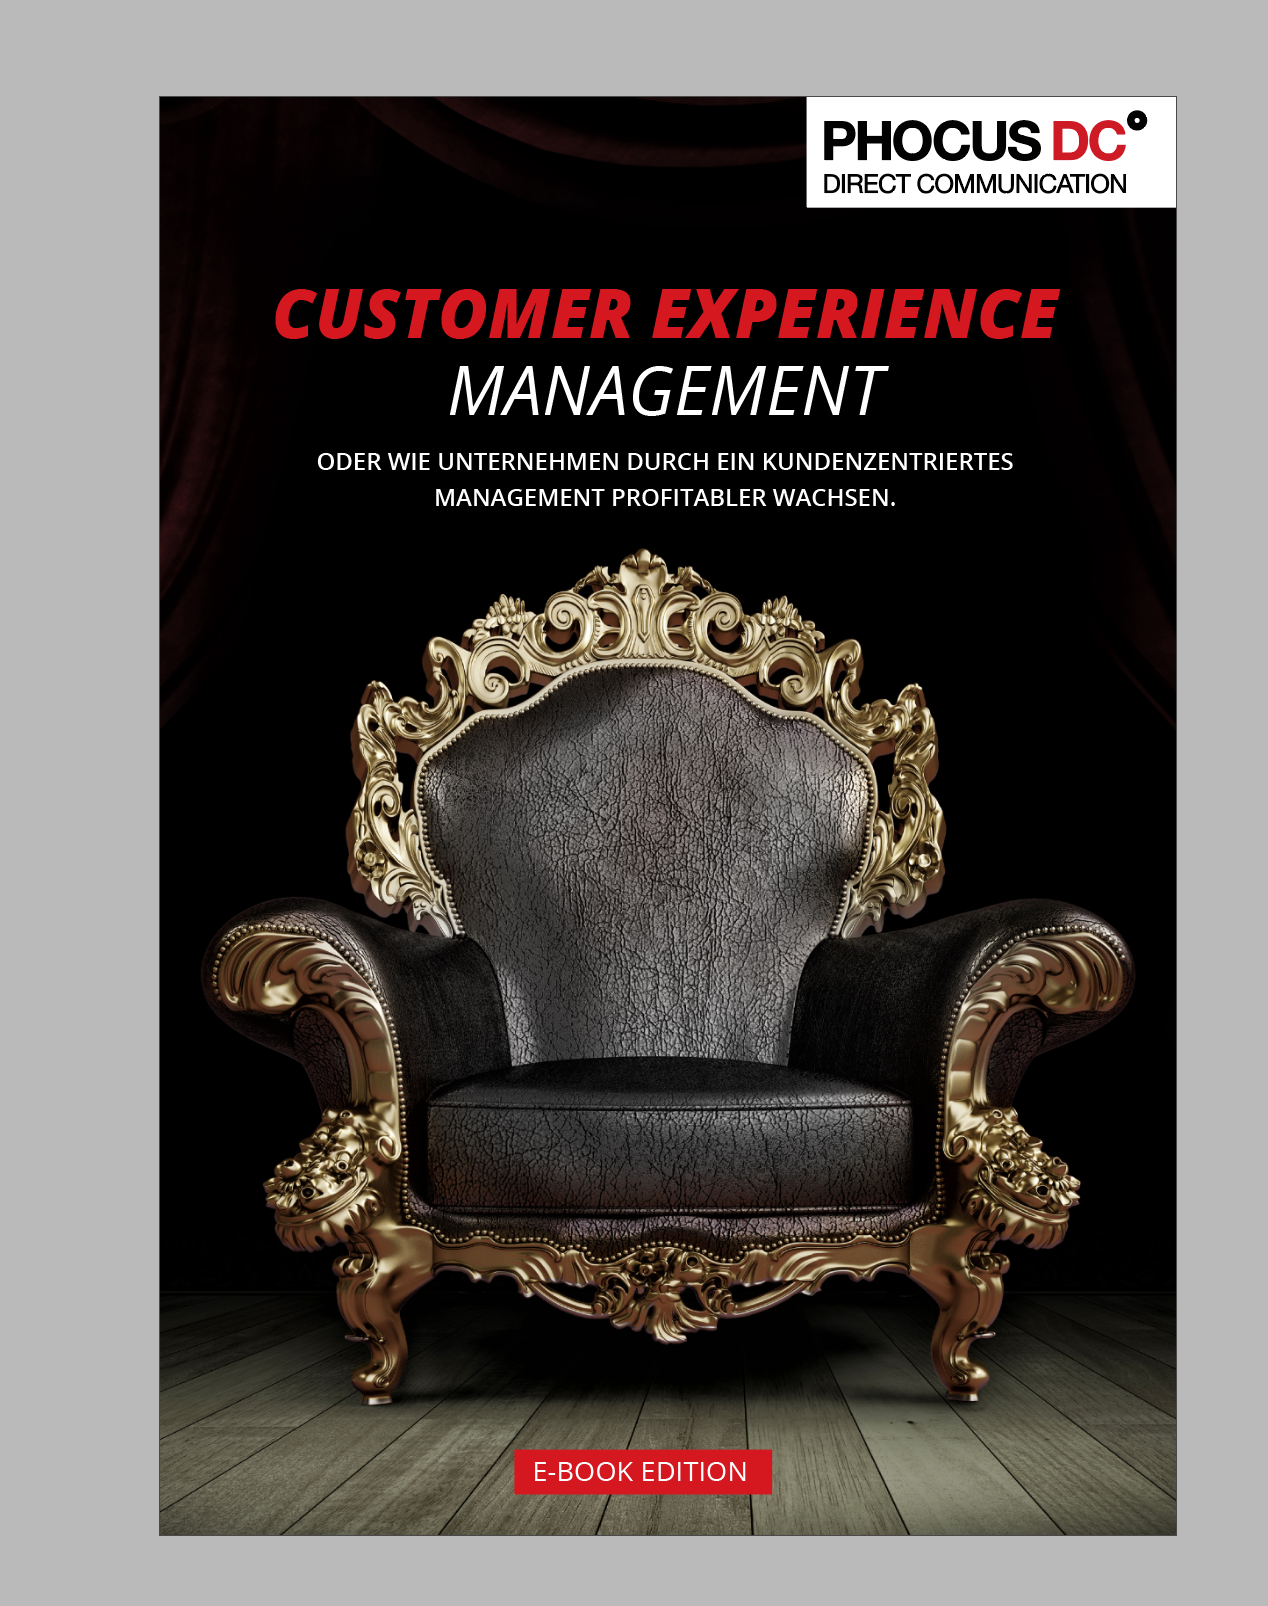 Ein gutes Team: Customer Experience und Customer Centricity